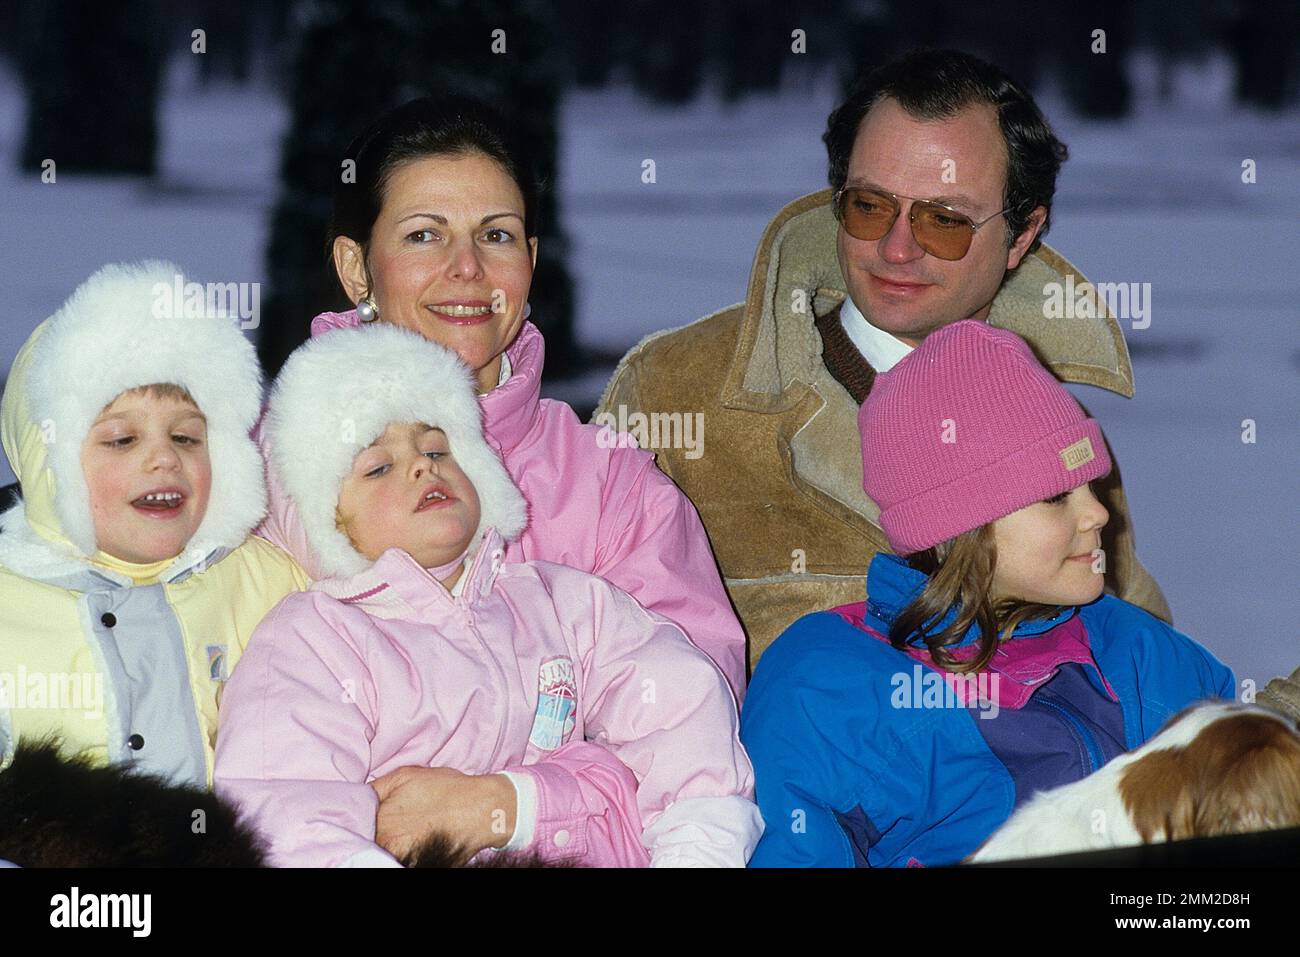 Carl XVI Gustaf, re di Svezia. Nato il 30 aprile 1946. Il re Carlo XVI Gustaf, la regina Silvia e i loro figli, la principessa Madeleine, la principessa della corona Victoria, il principe Carl Philip, raffigurato nel parco del castello di Drottningholm 1985 durante la sessione fotografica annuale natale/inverno. Foto Stock